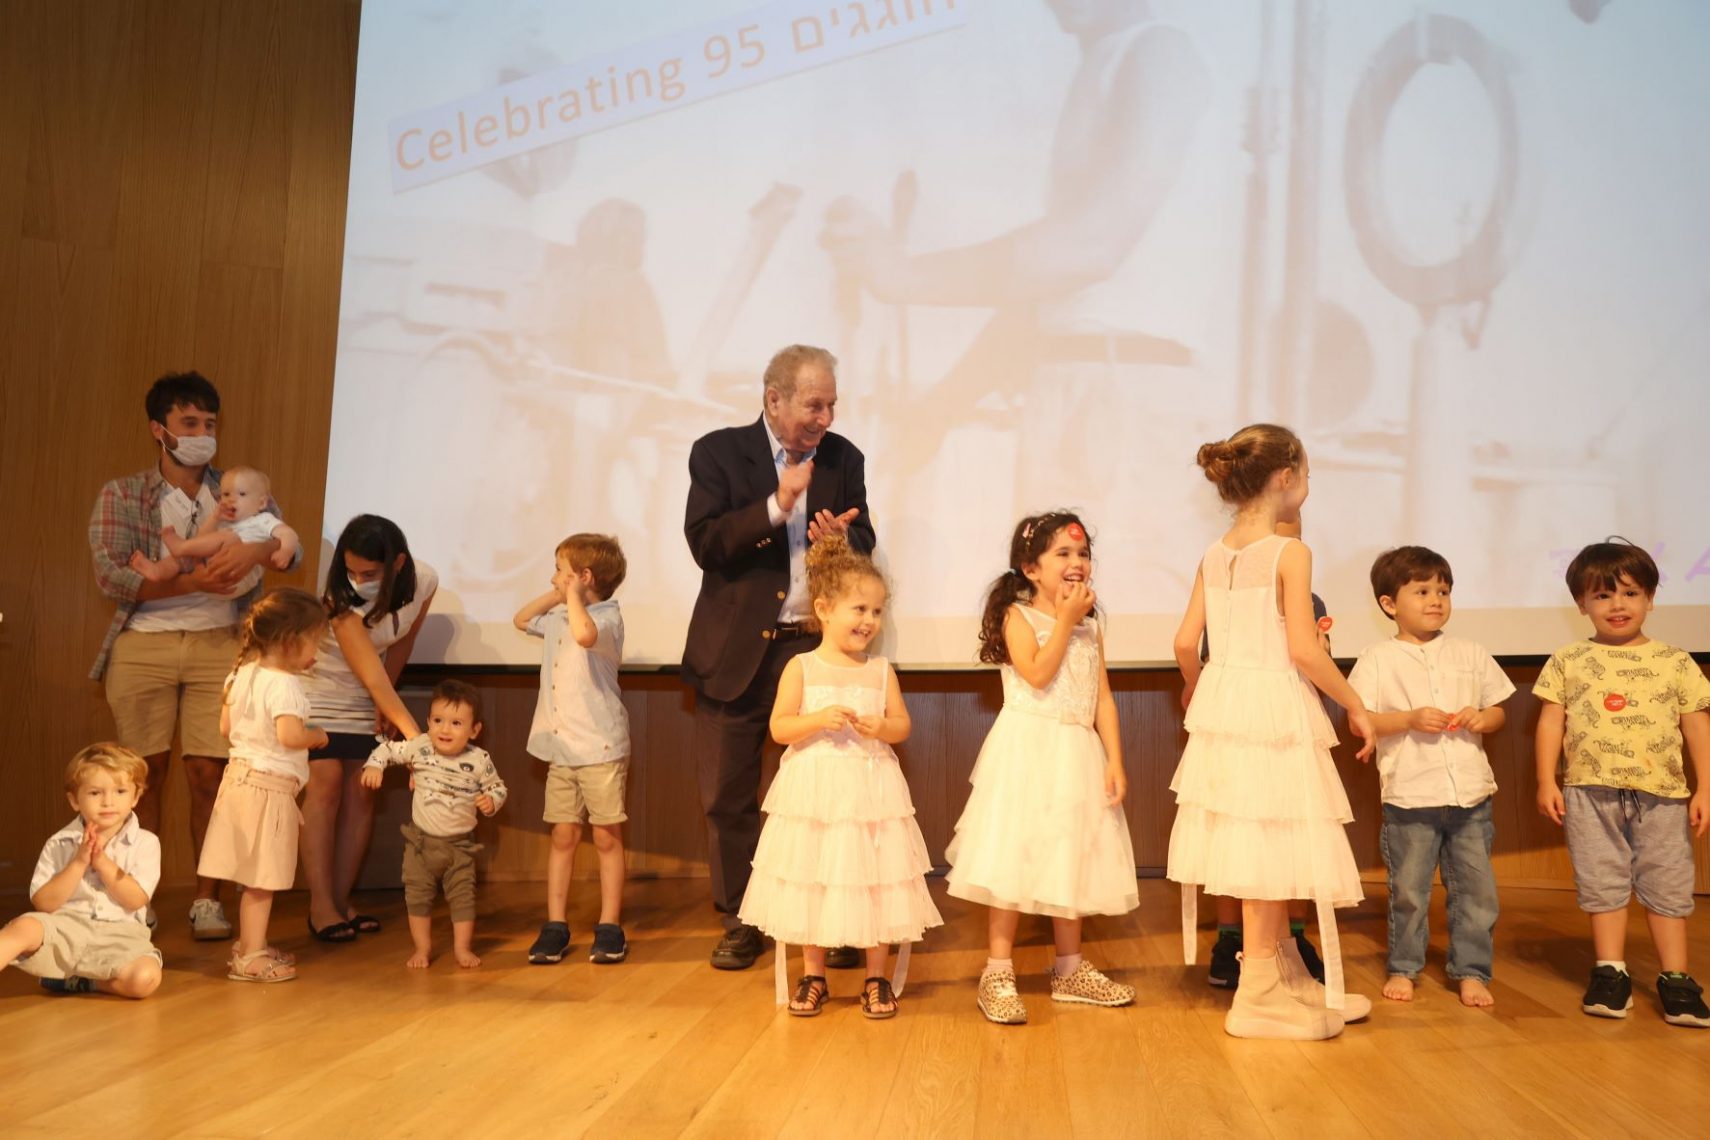 מורי עם חלק מנכדיו וניניו באירוע יום ההולדת 95 שלו, 1.10, אנו - מוזיאון העם היהודי (צילום: איציק בירן)